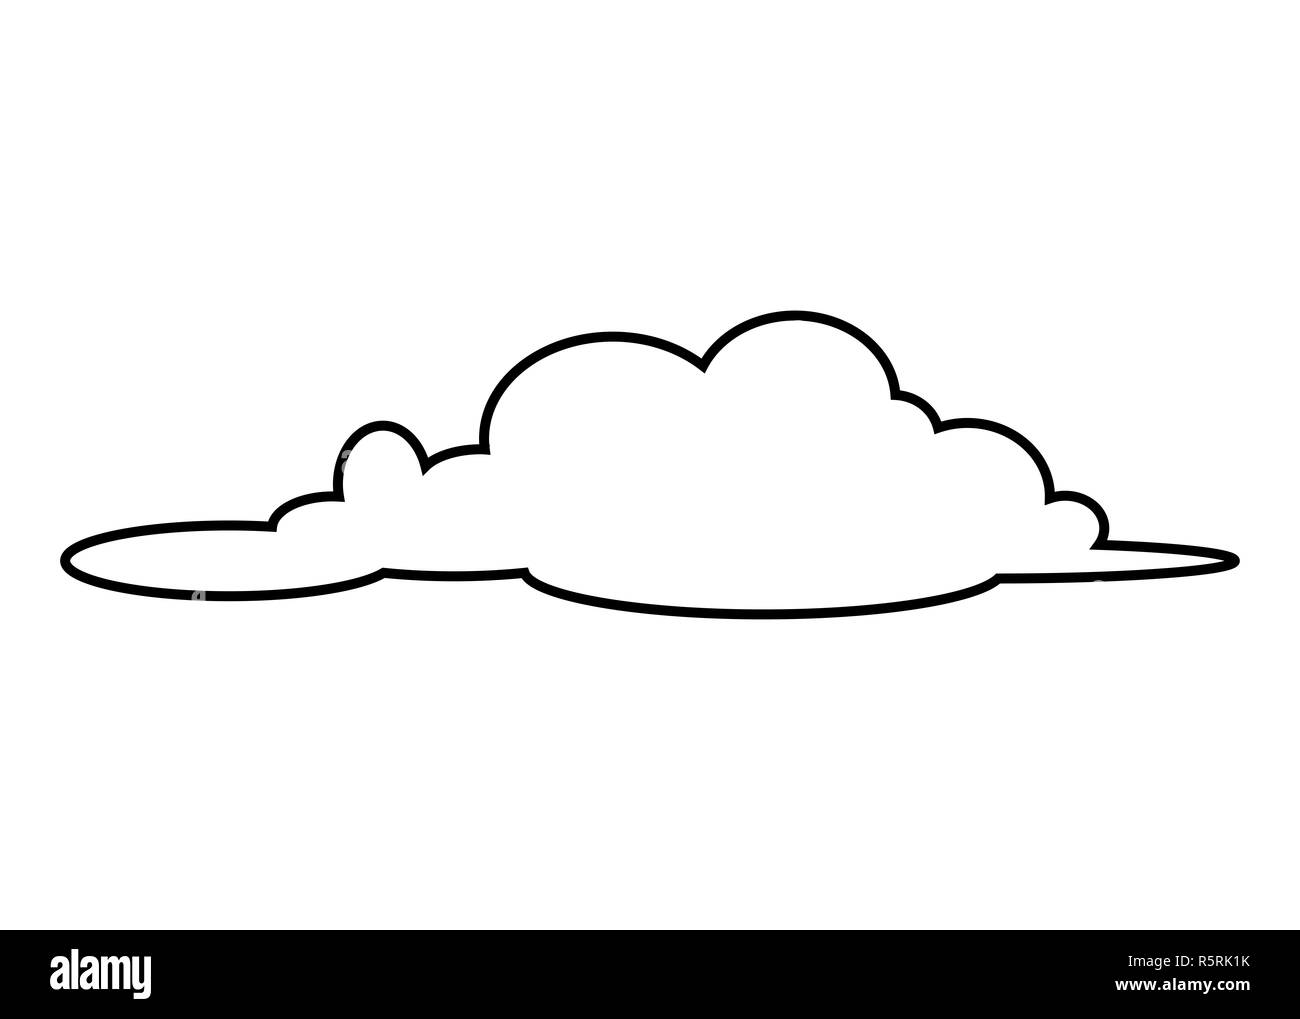 cloud silhouette vector symbol icon design Stock Photo